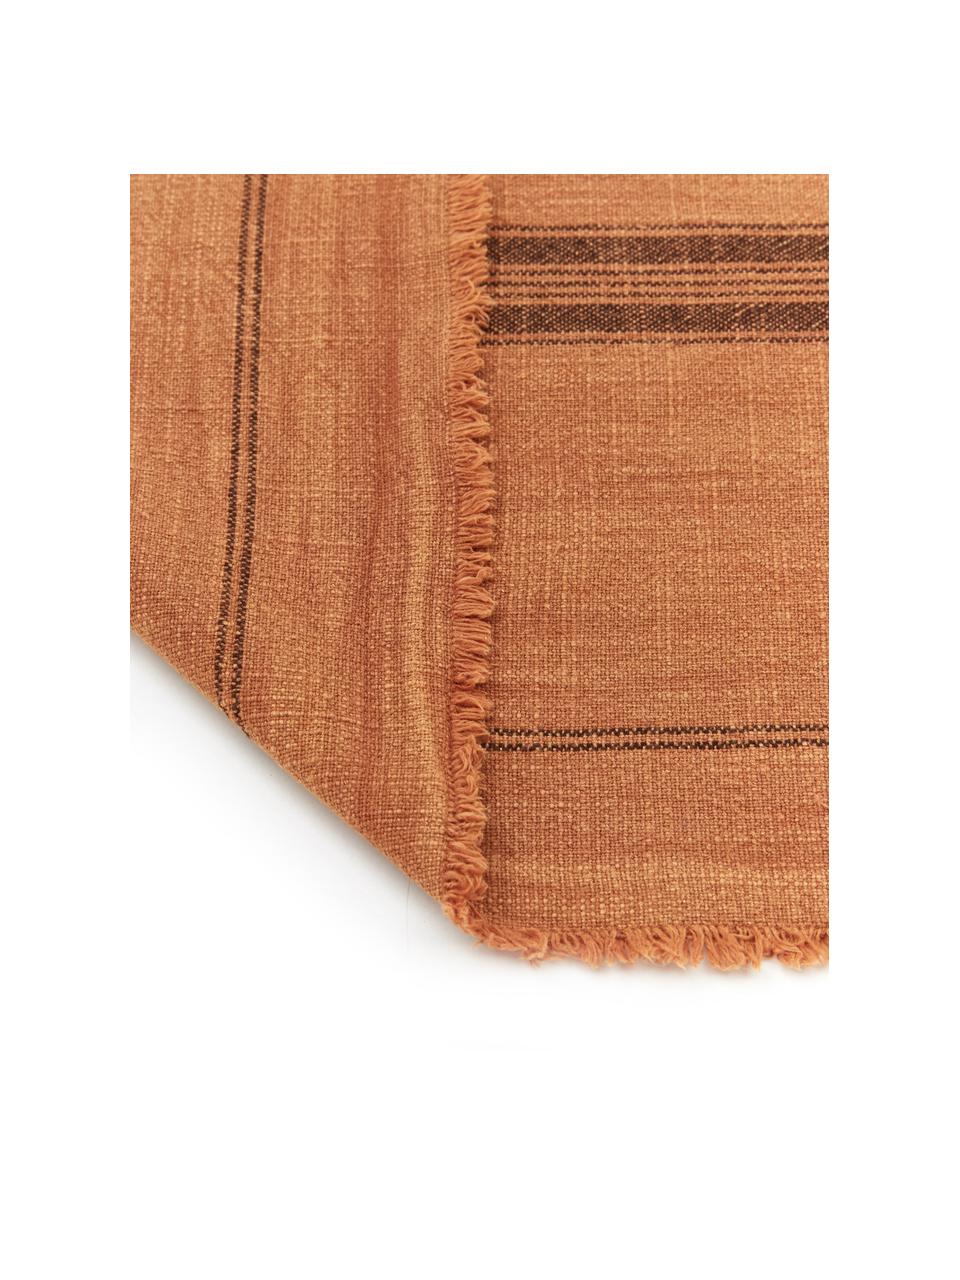 Baumwoll-Tischläufer Ripo in Terrakotta, 100% Baumwolle, Ziegelrot, Schwarz, B 40 x L 140 cm